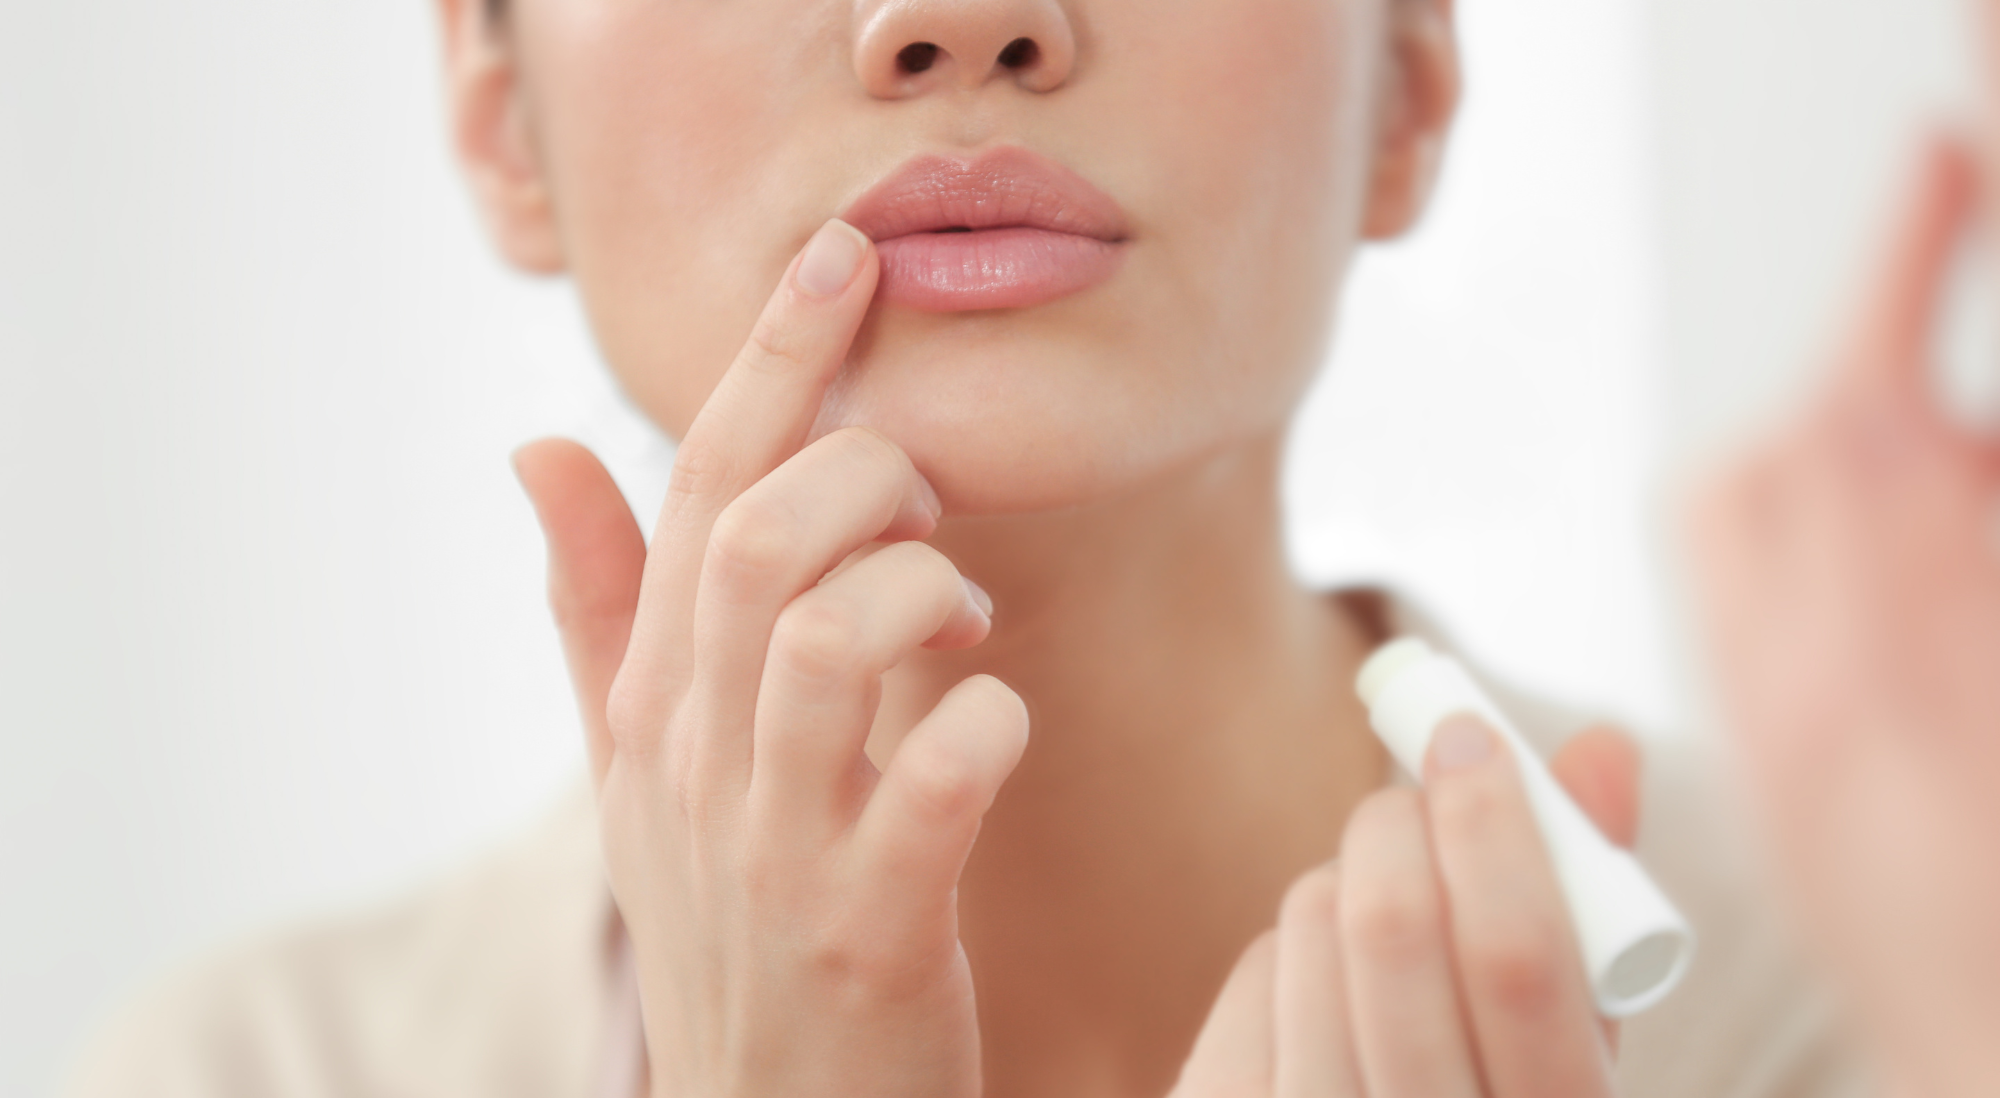 Lippenstift - Die besten Tipps und Tricks für schöne Lippen